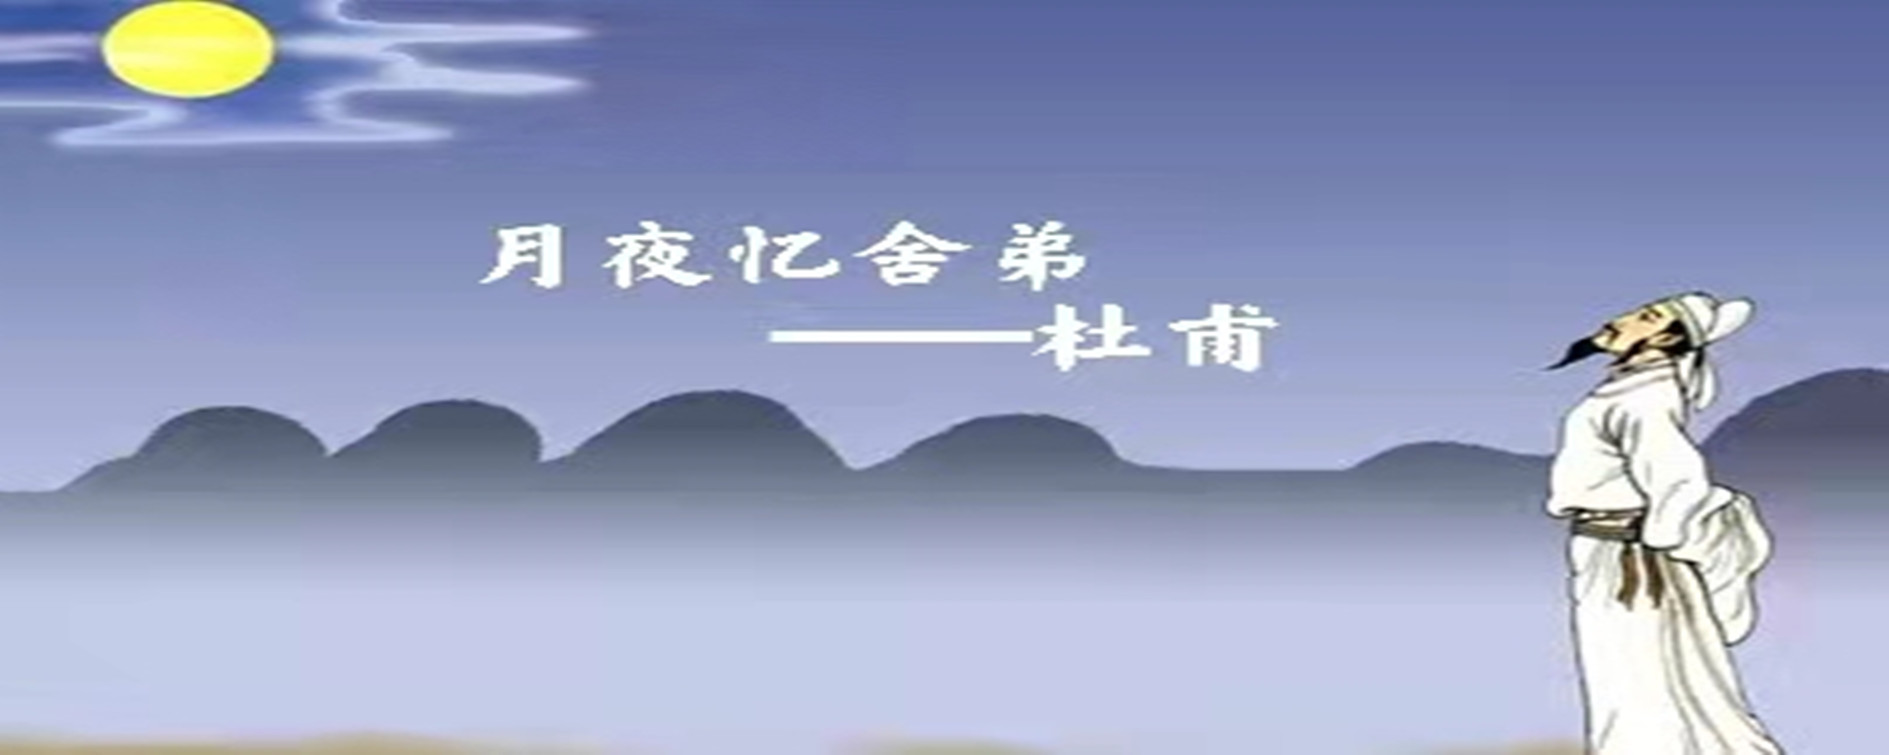 杜甫的《月夜忆舍弟》是关于中秋节的诗吗